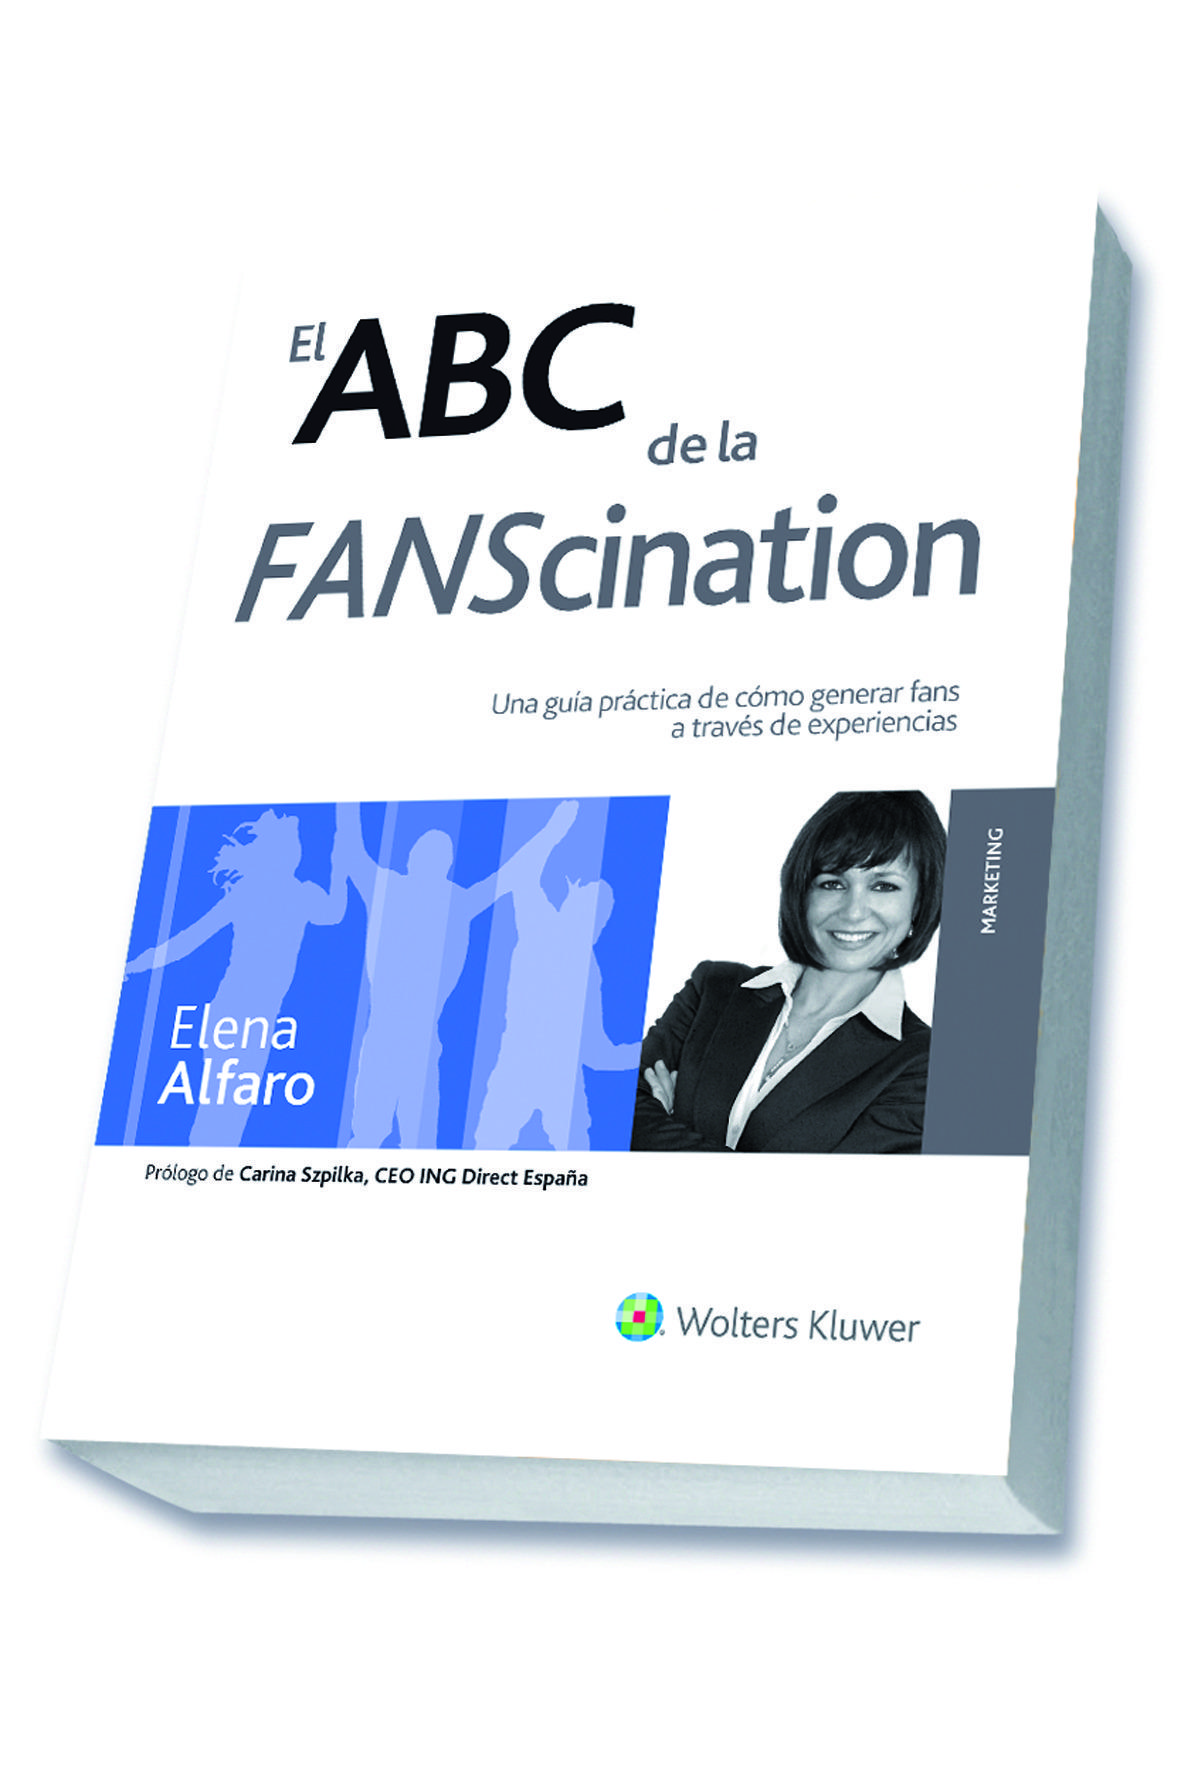 Foto El ABC de la FANScination